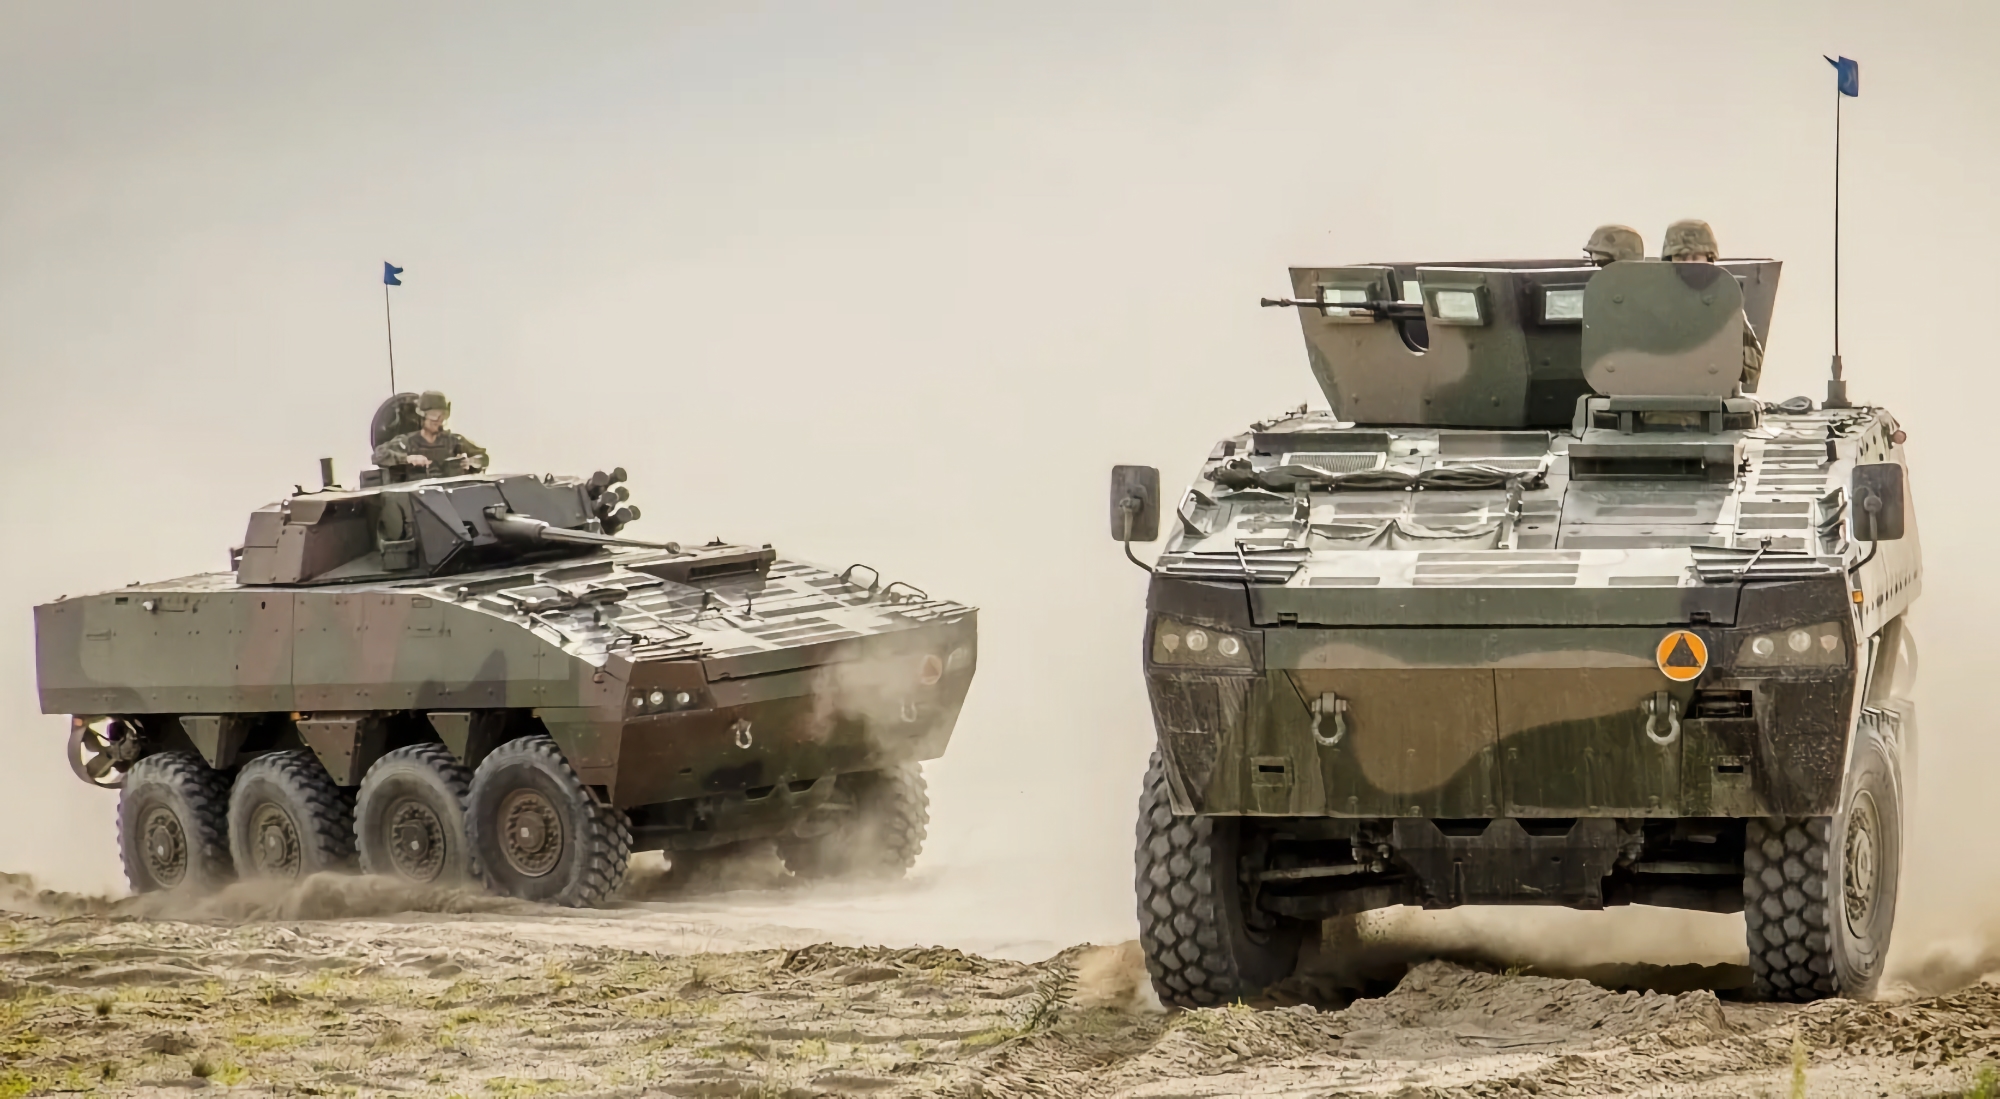 AFU använder redan polska Rosomak pansarfordon, stridsfordonen visas i videon tillsammans med Stridsvagn 122 stridsvagnar och CV9040 BMP